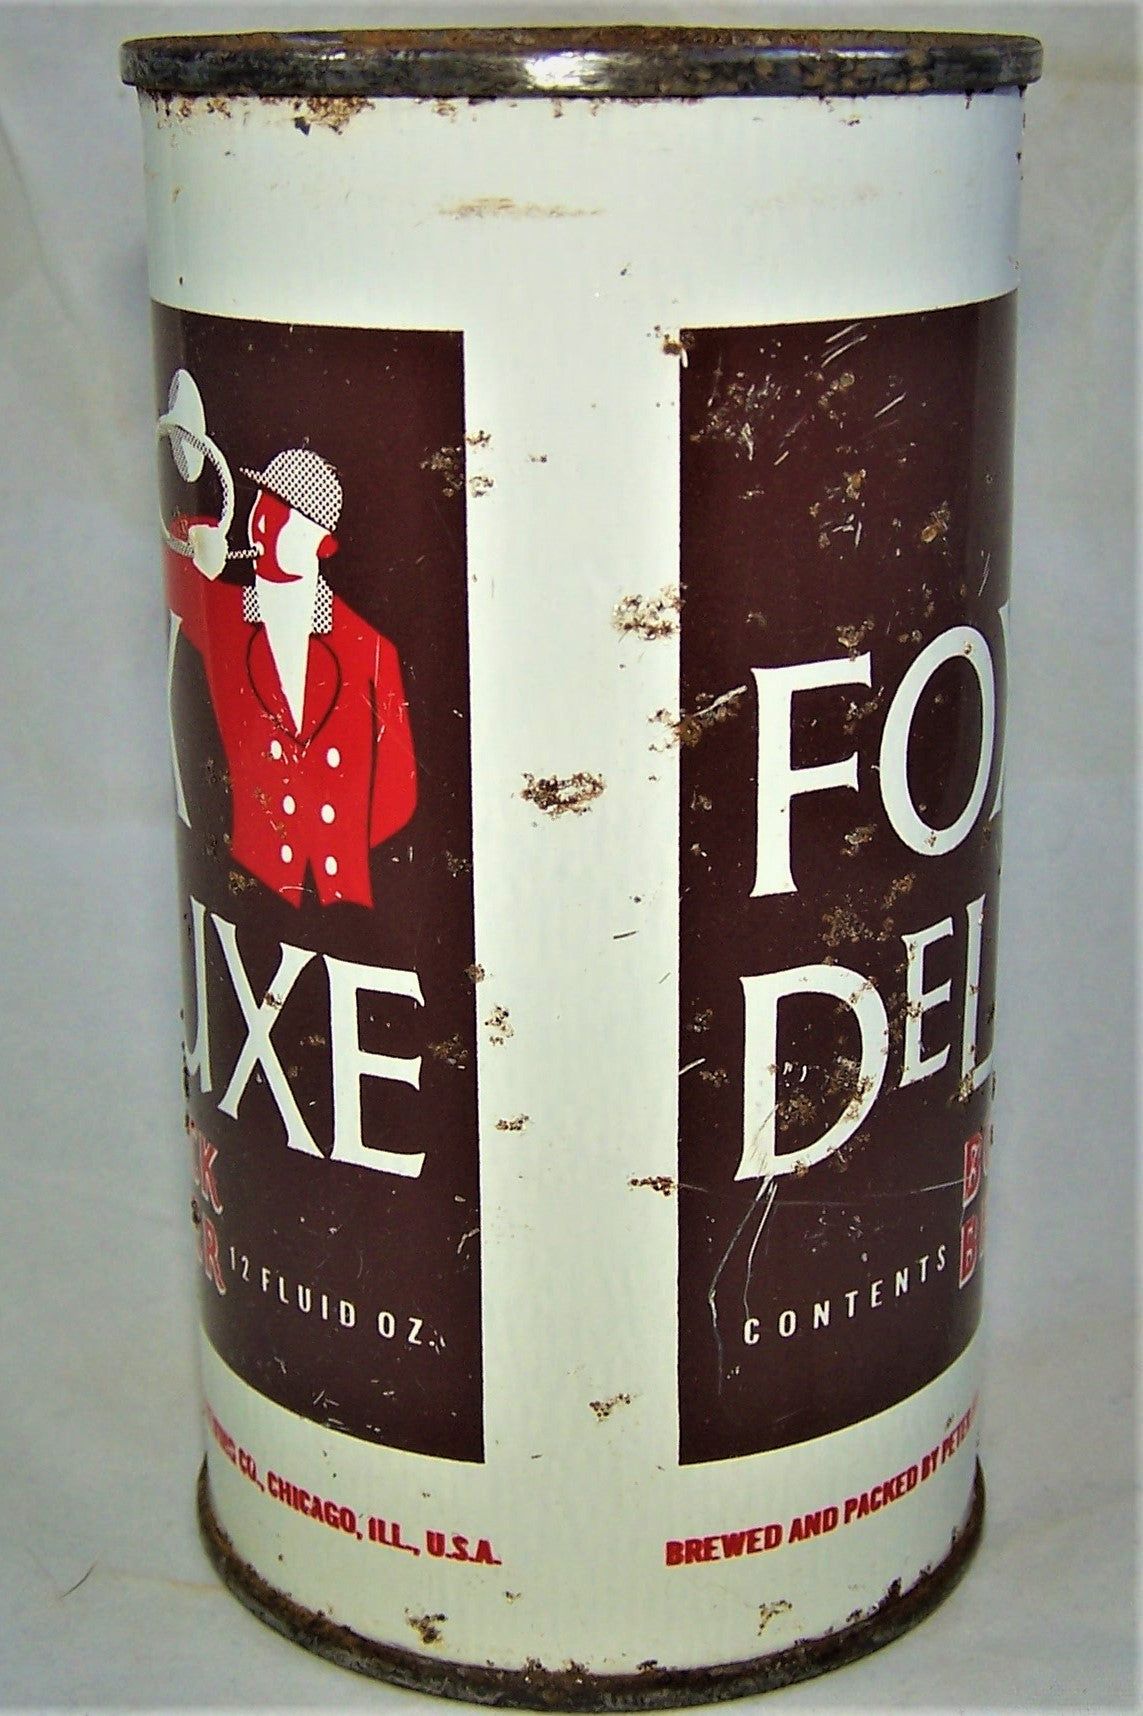 Fox DeLuxe Bock Beer, USBC 65-10, Grade 2+ Sold on 10/26/18